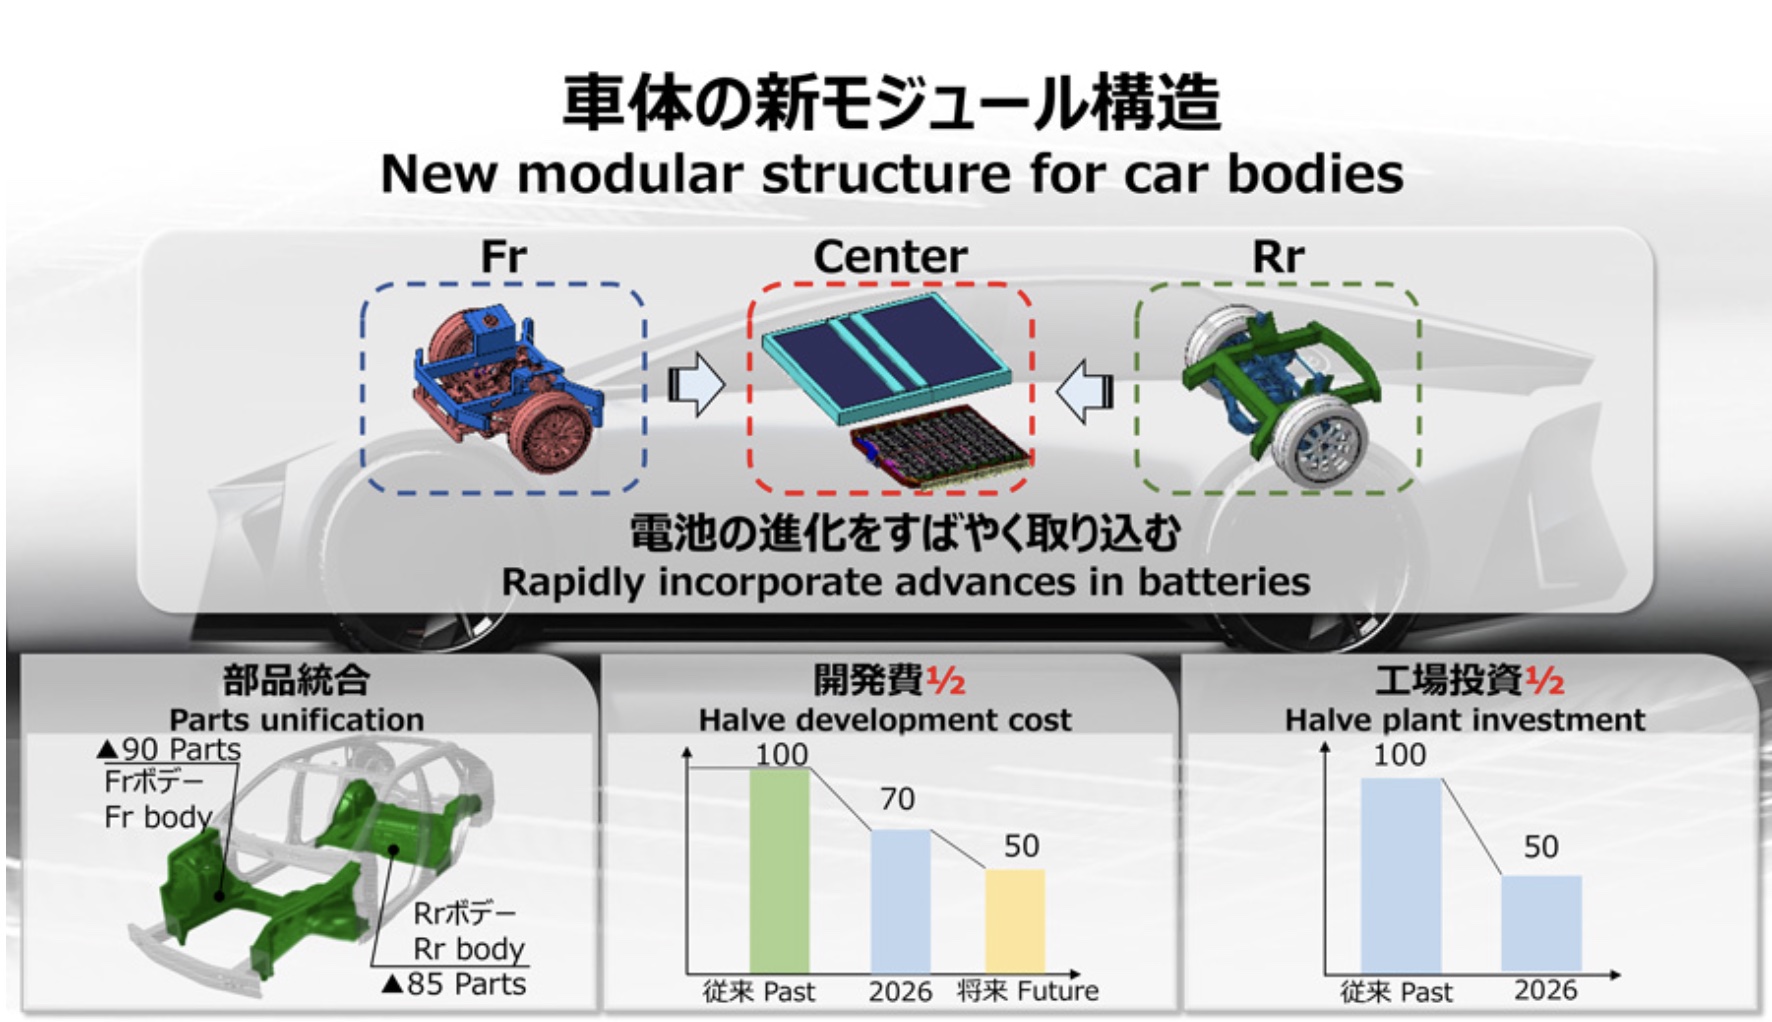 トヨタが発表した新モジュール構造、そこではギガキャスト（ギガプレスの別称）が採用される予定